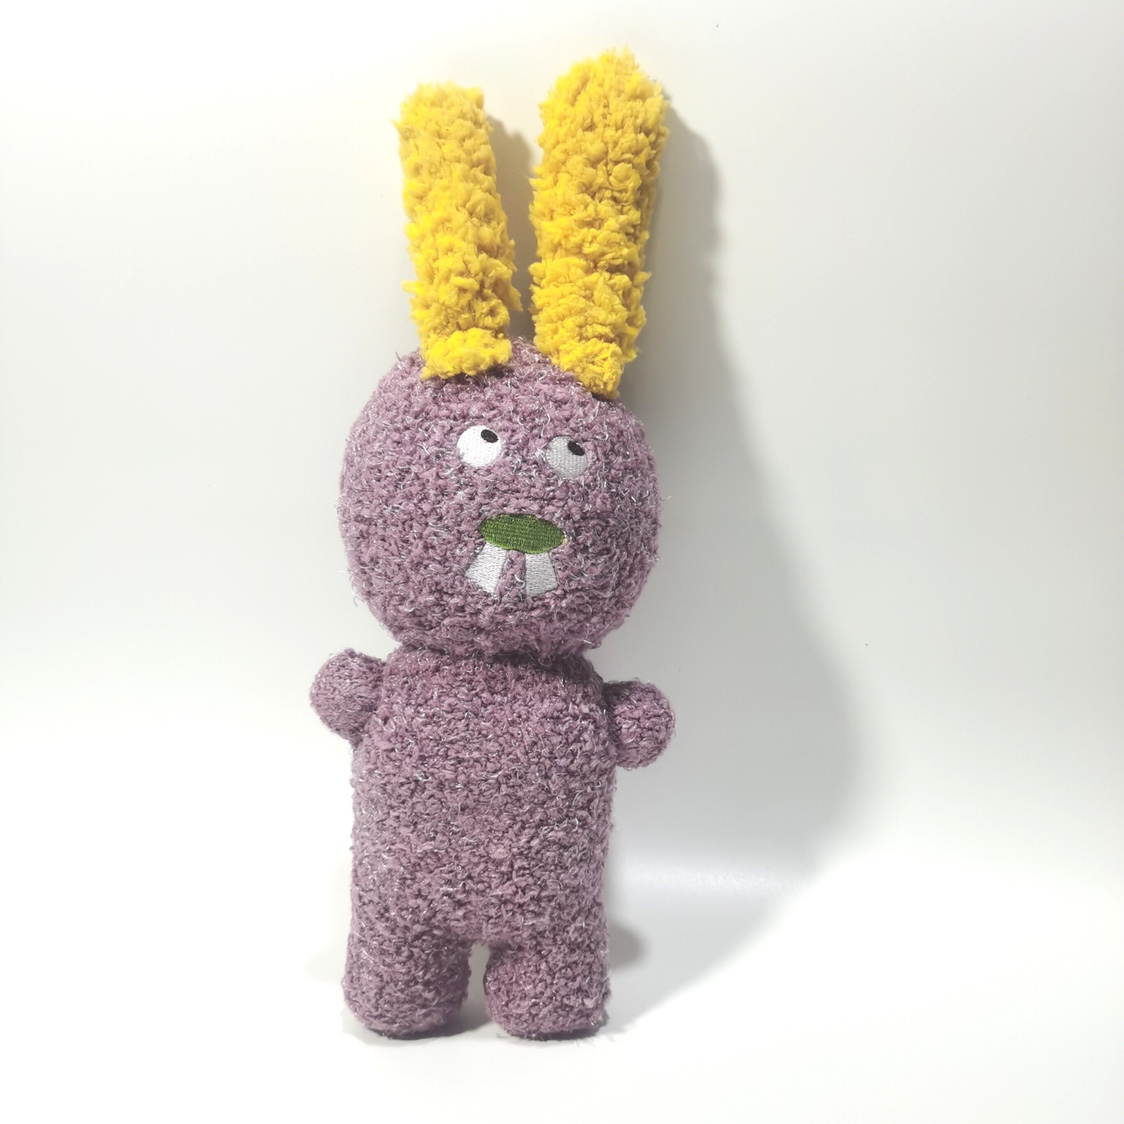 个性创意纯手工制作袜子娃娃成品兔子毛绒玩偶手工作业